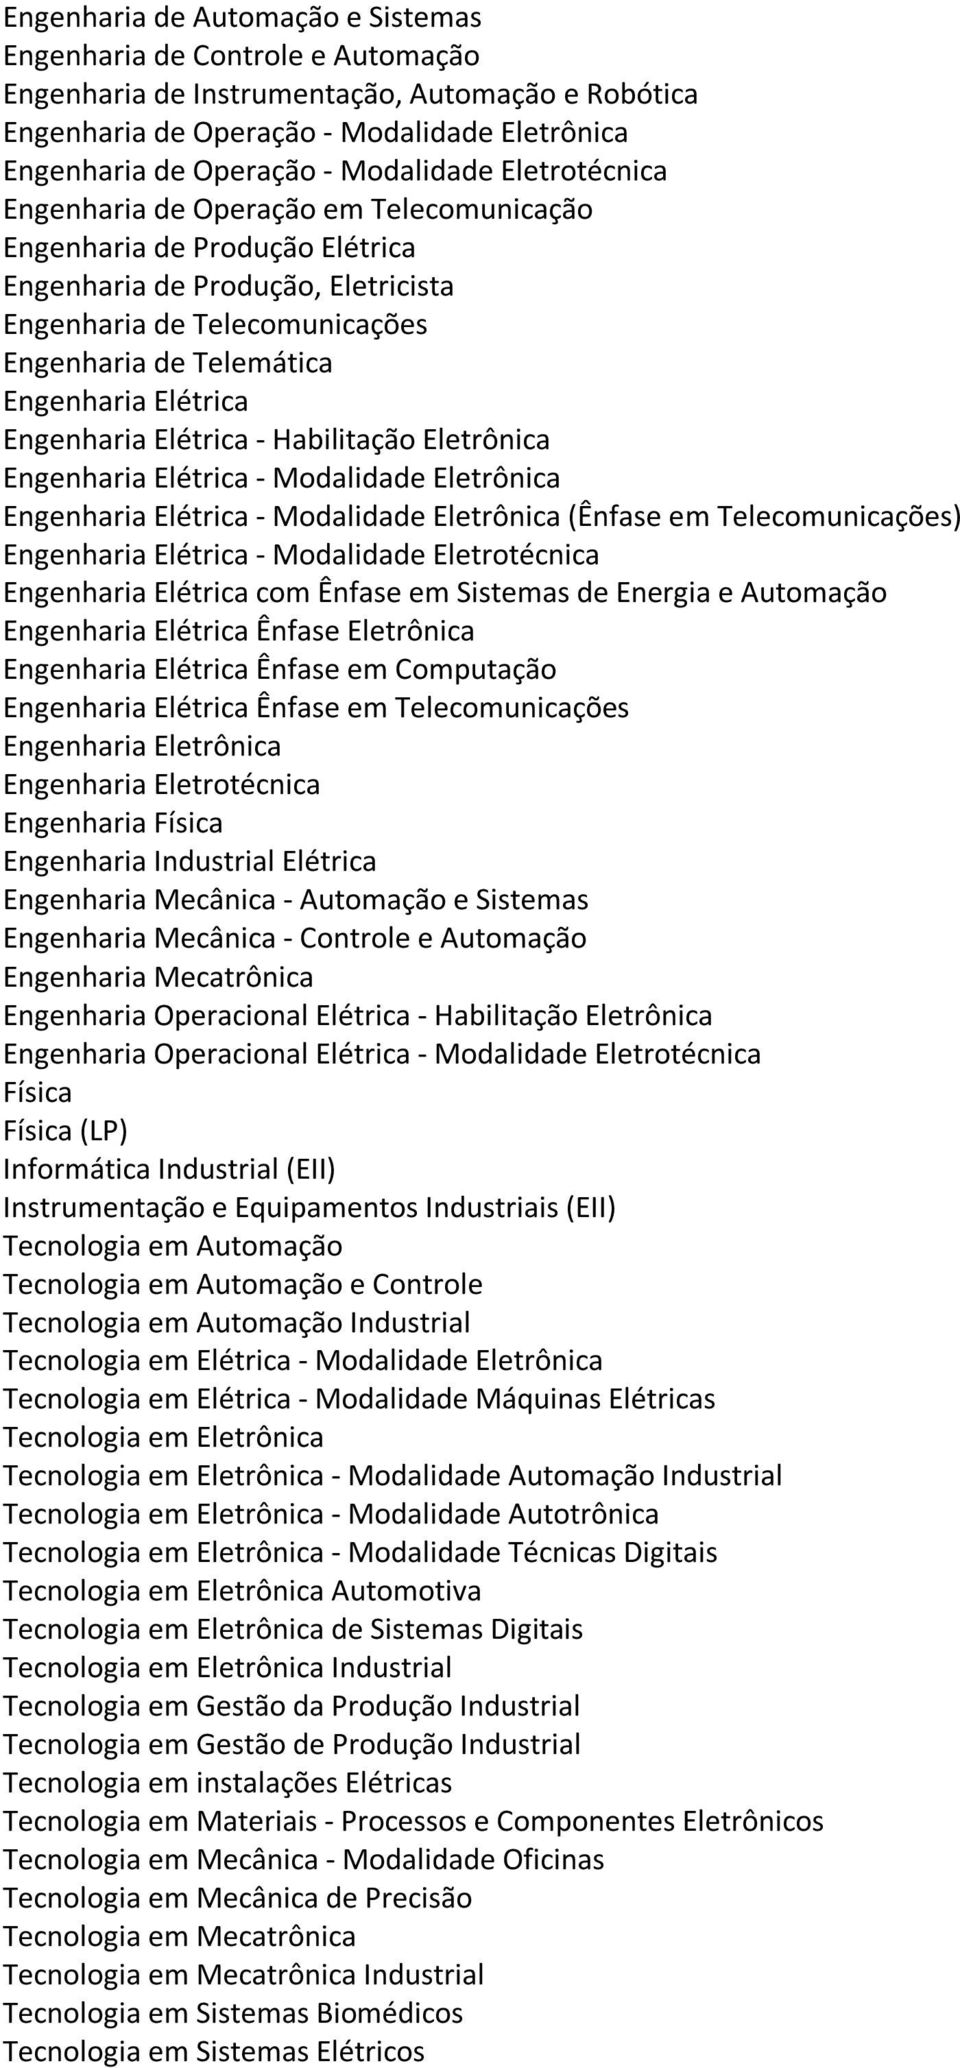 Industriais (EII) Tecnologia em Elétrica - Modalidade Eletrônica - Modalidade Automação Industrial - Modalidade Autotrônica Automotiva Industrial Tecnologia em Gestão da Produção